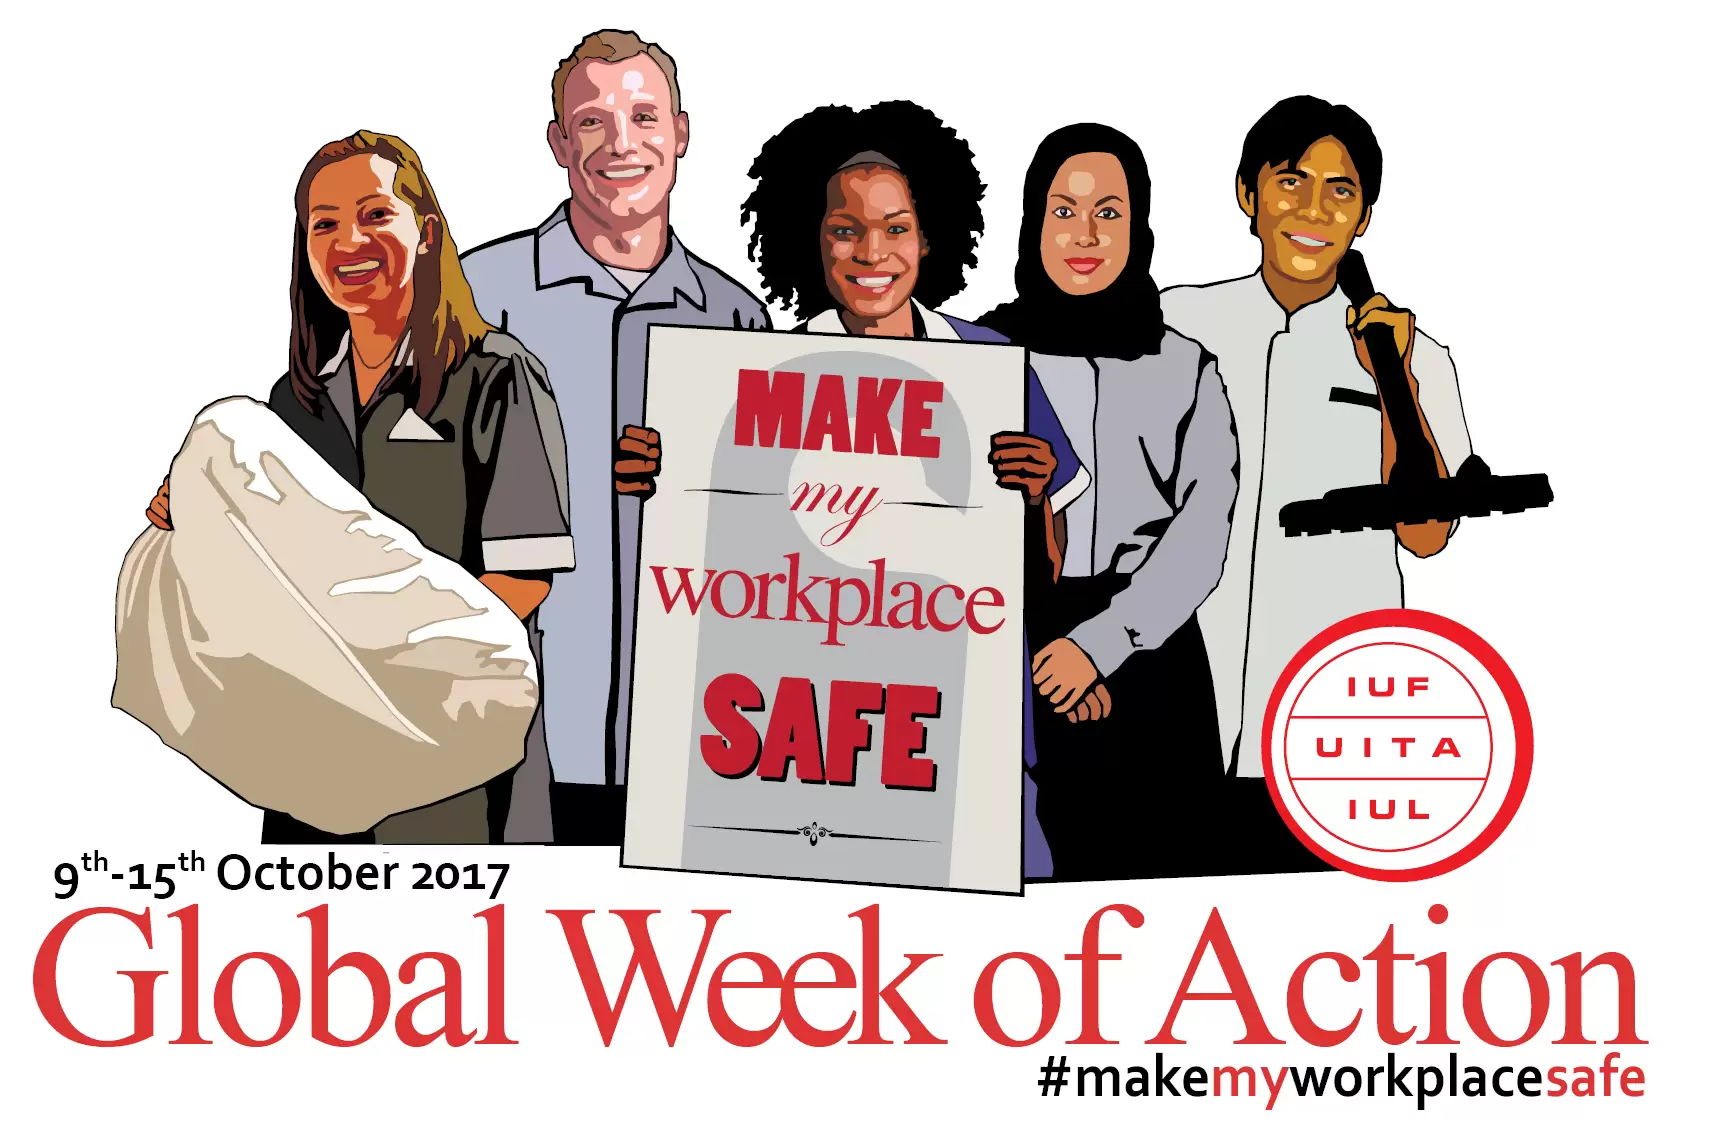 Global-Week-of-Action-9-15October2017-EN